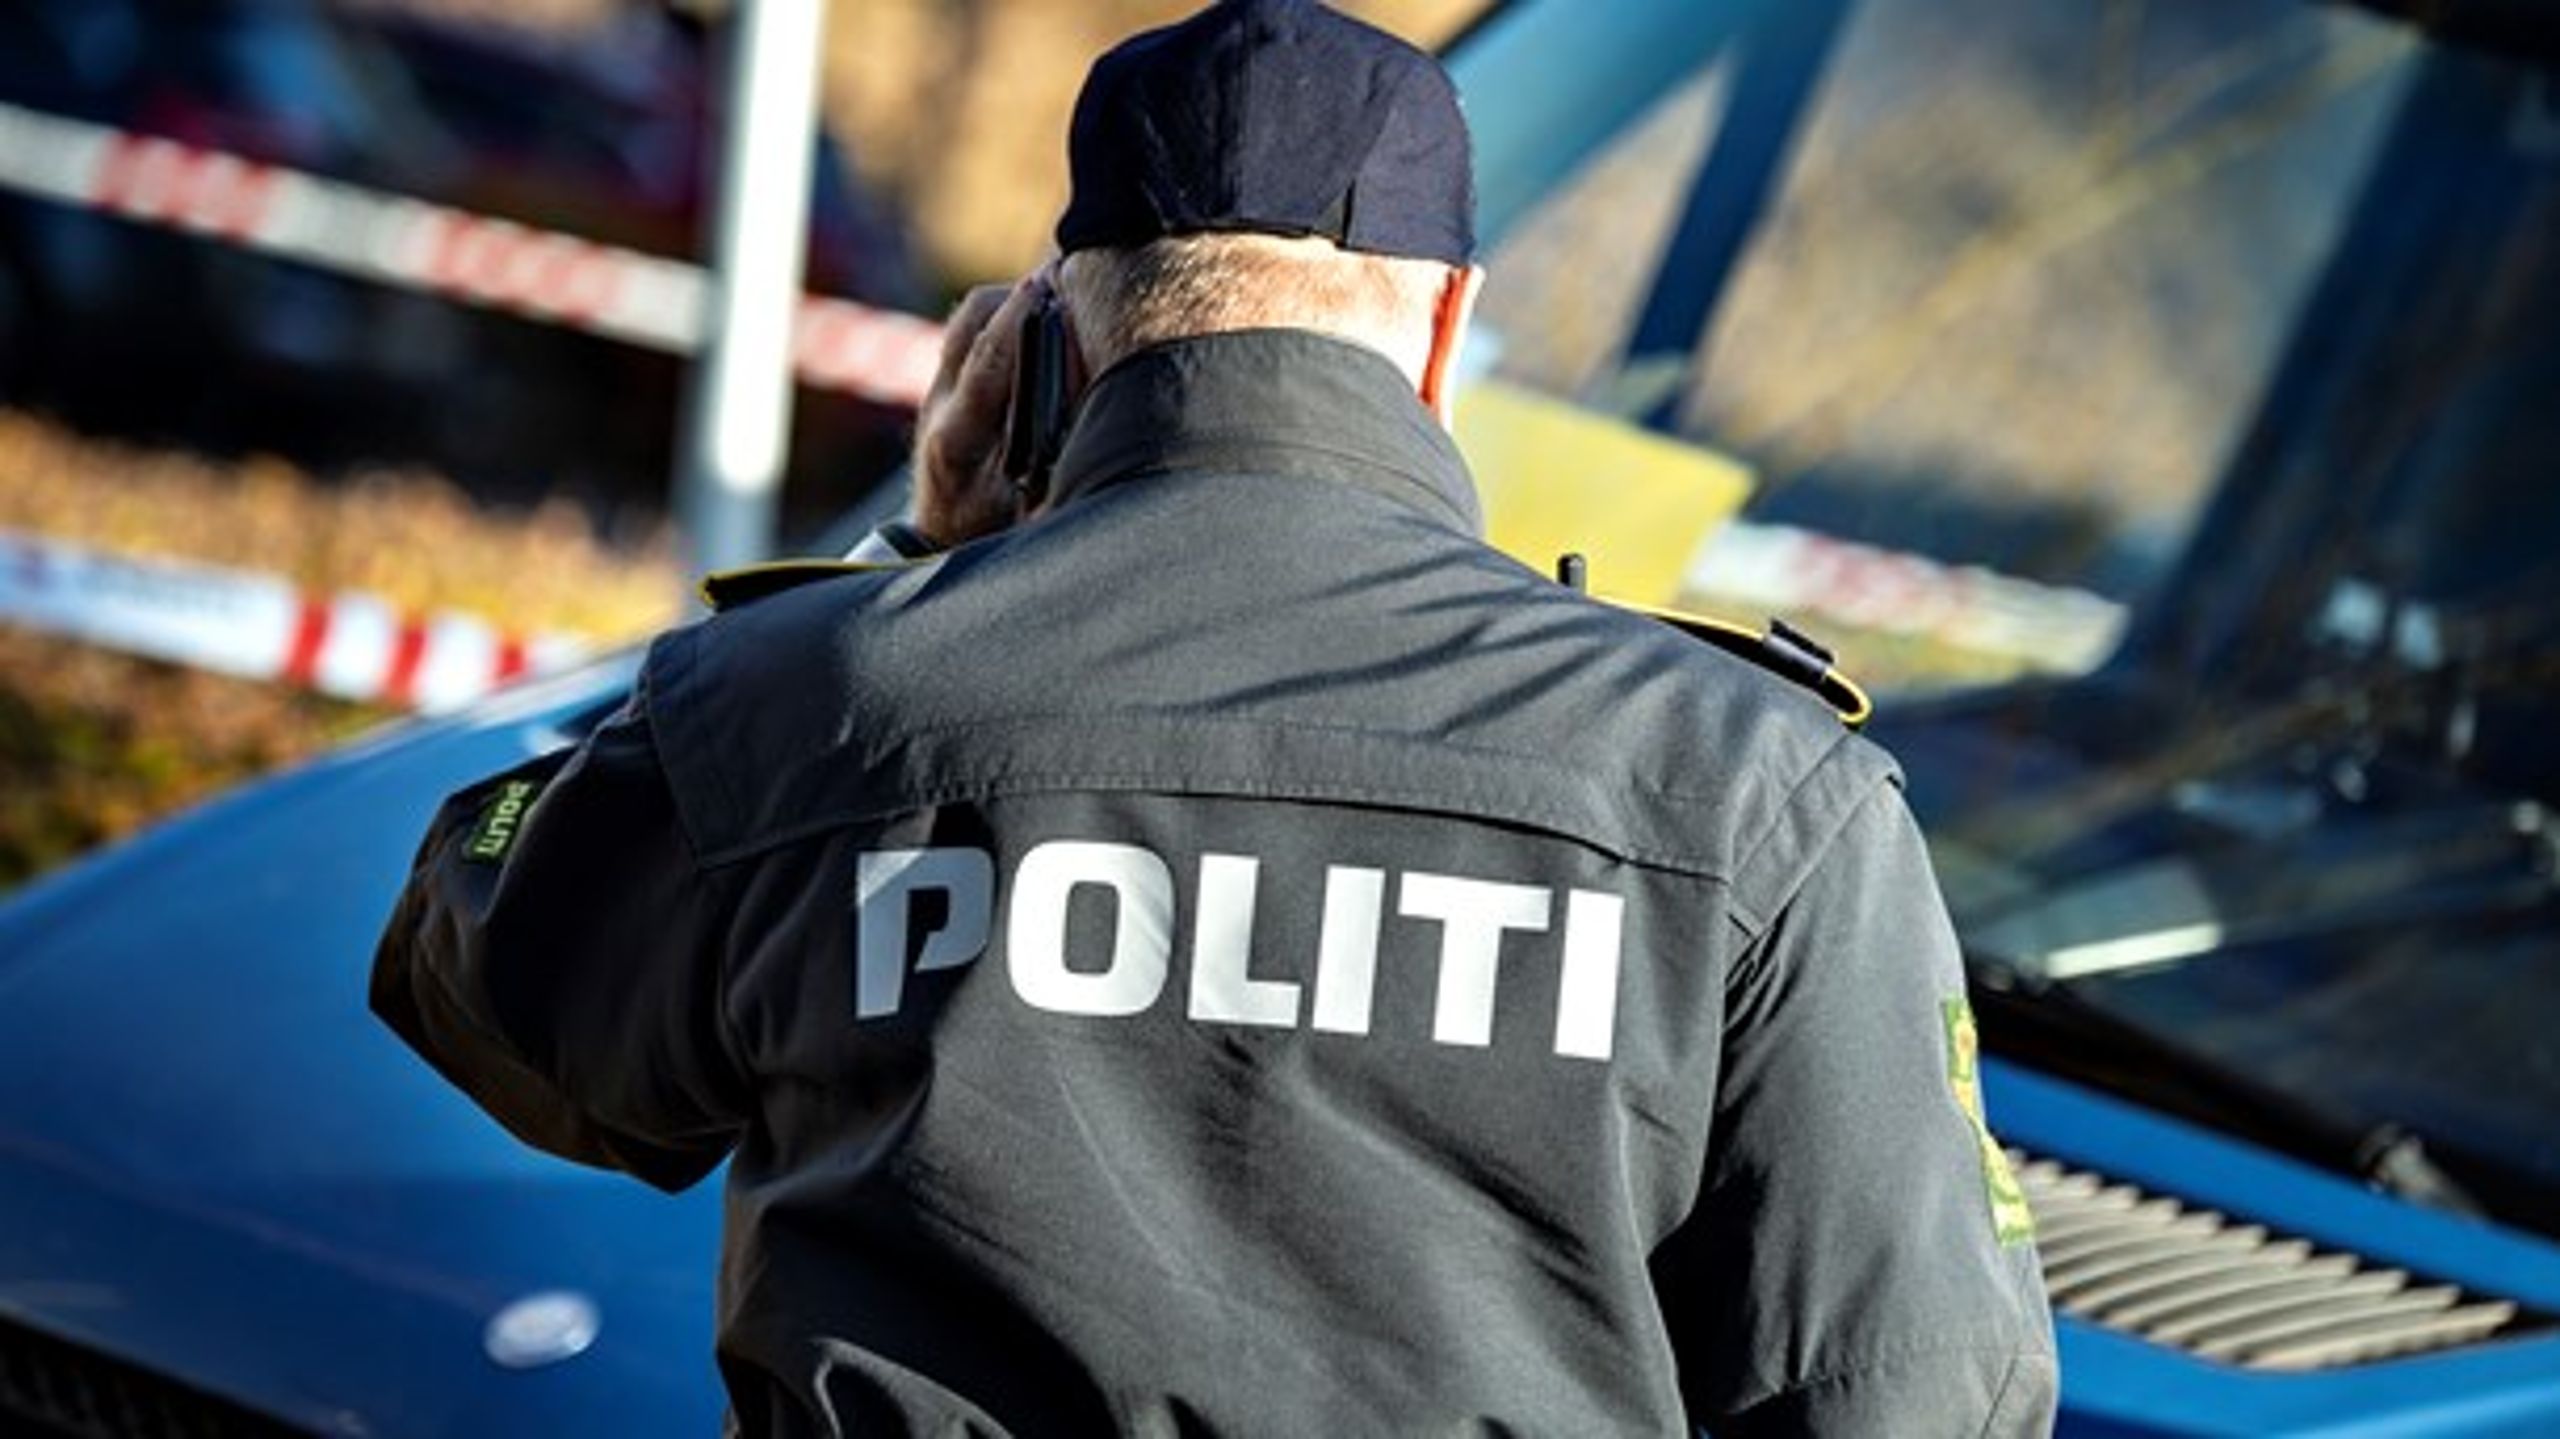 Politiet er blevet en forretning, hvor økonomien er vigtigere end borgernes sikkerhed, skriver Benny Bindslev.